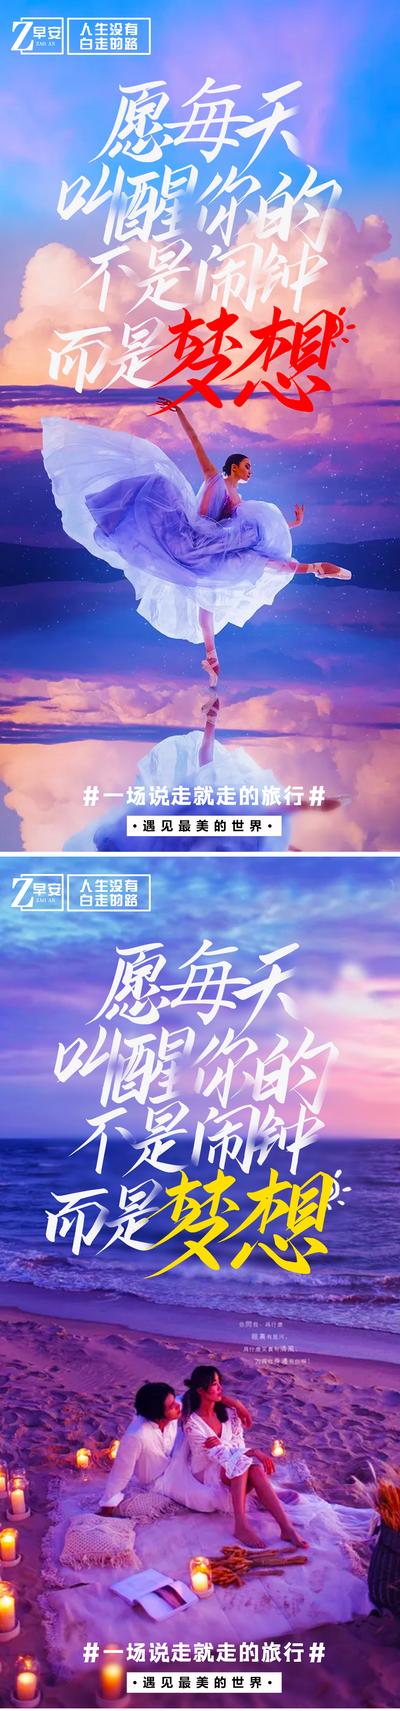 【南门网】海报 旅游 早安 励志 自由行 湖北 三峡 重庆 